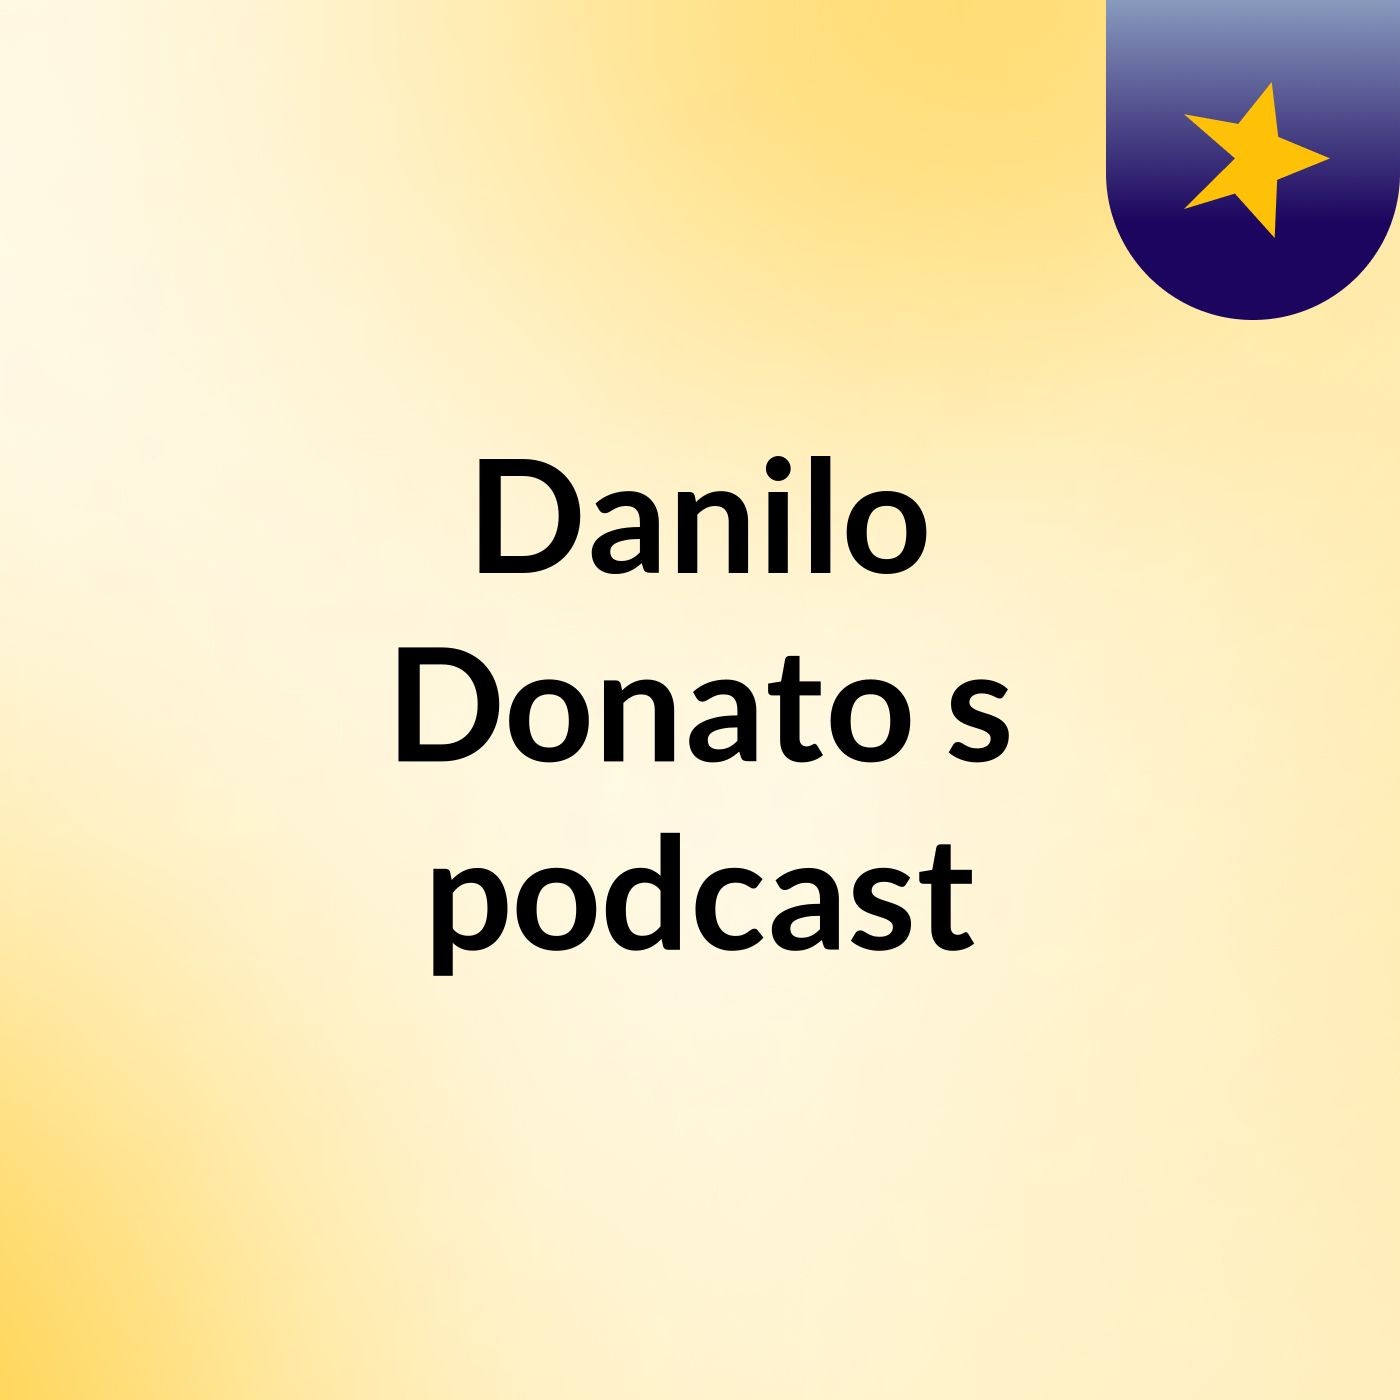 Danilo Donato's podcast